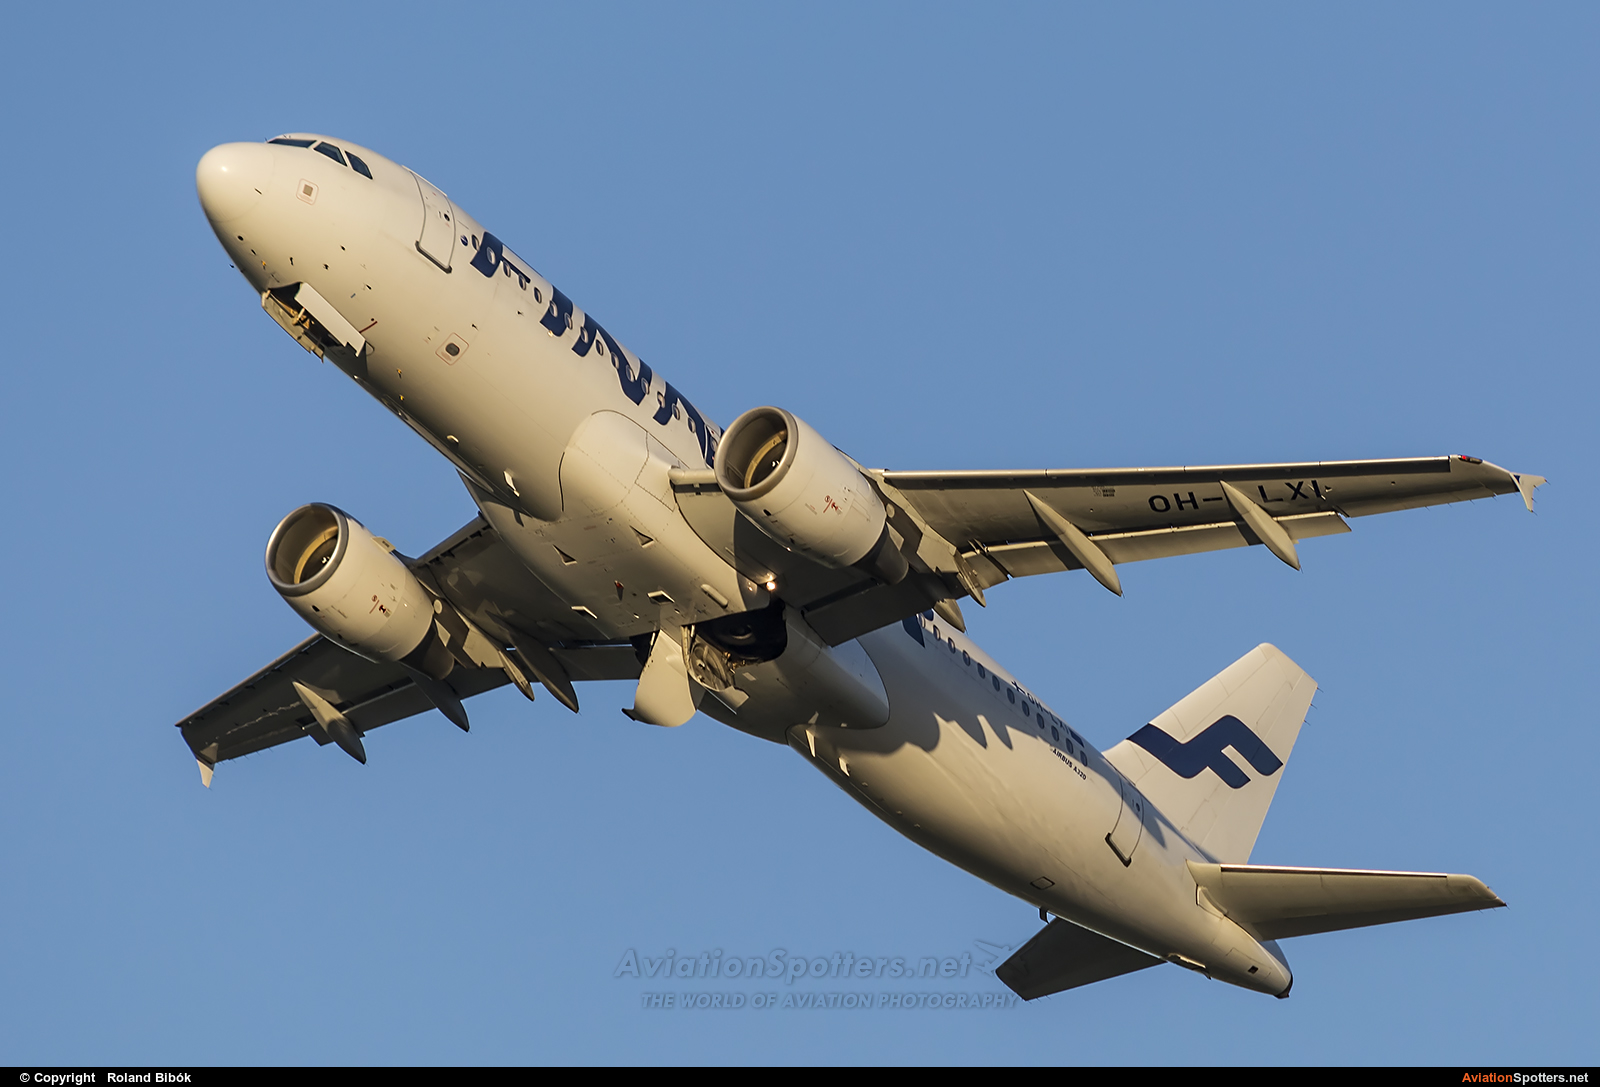 Finnair  -  A320-214  (OH-LXI) By Roland Bibók (Roland Bibok)